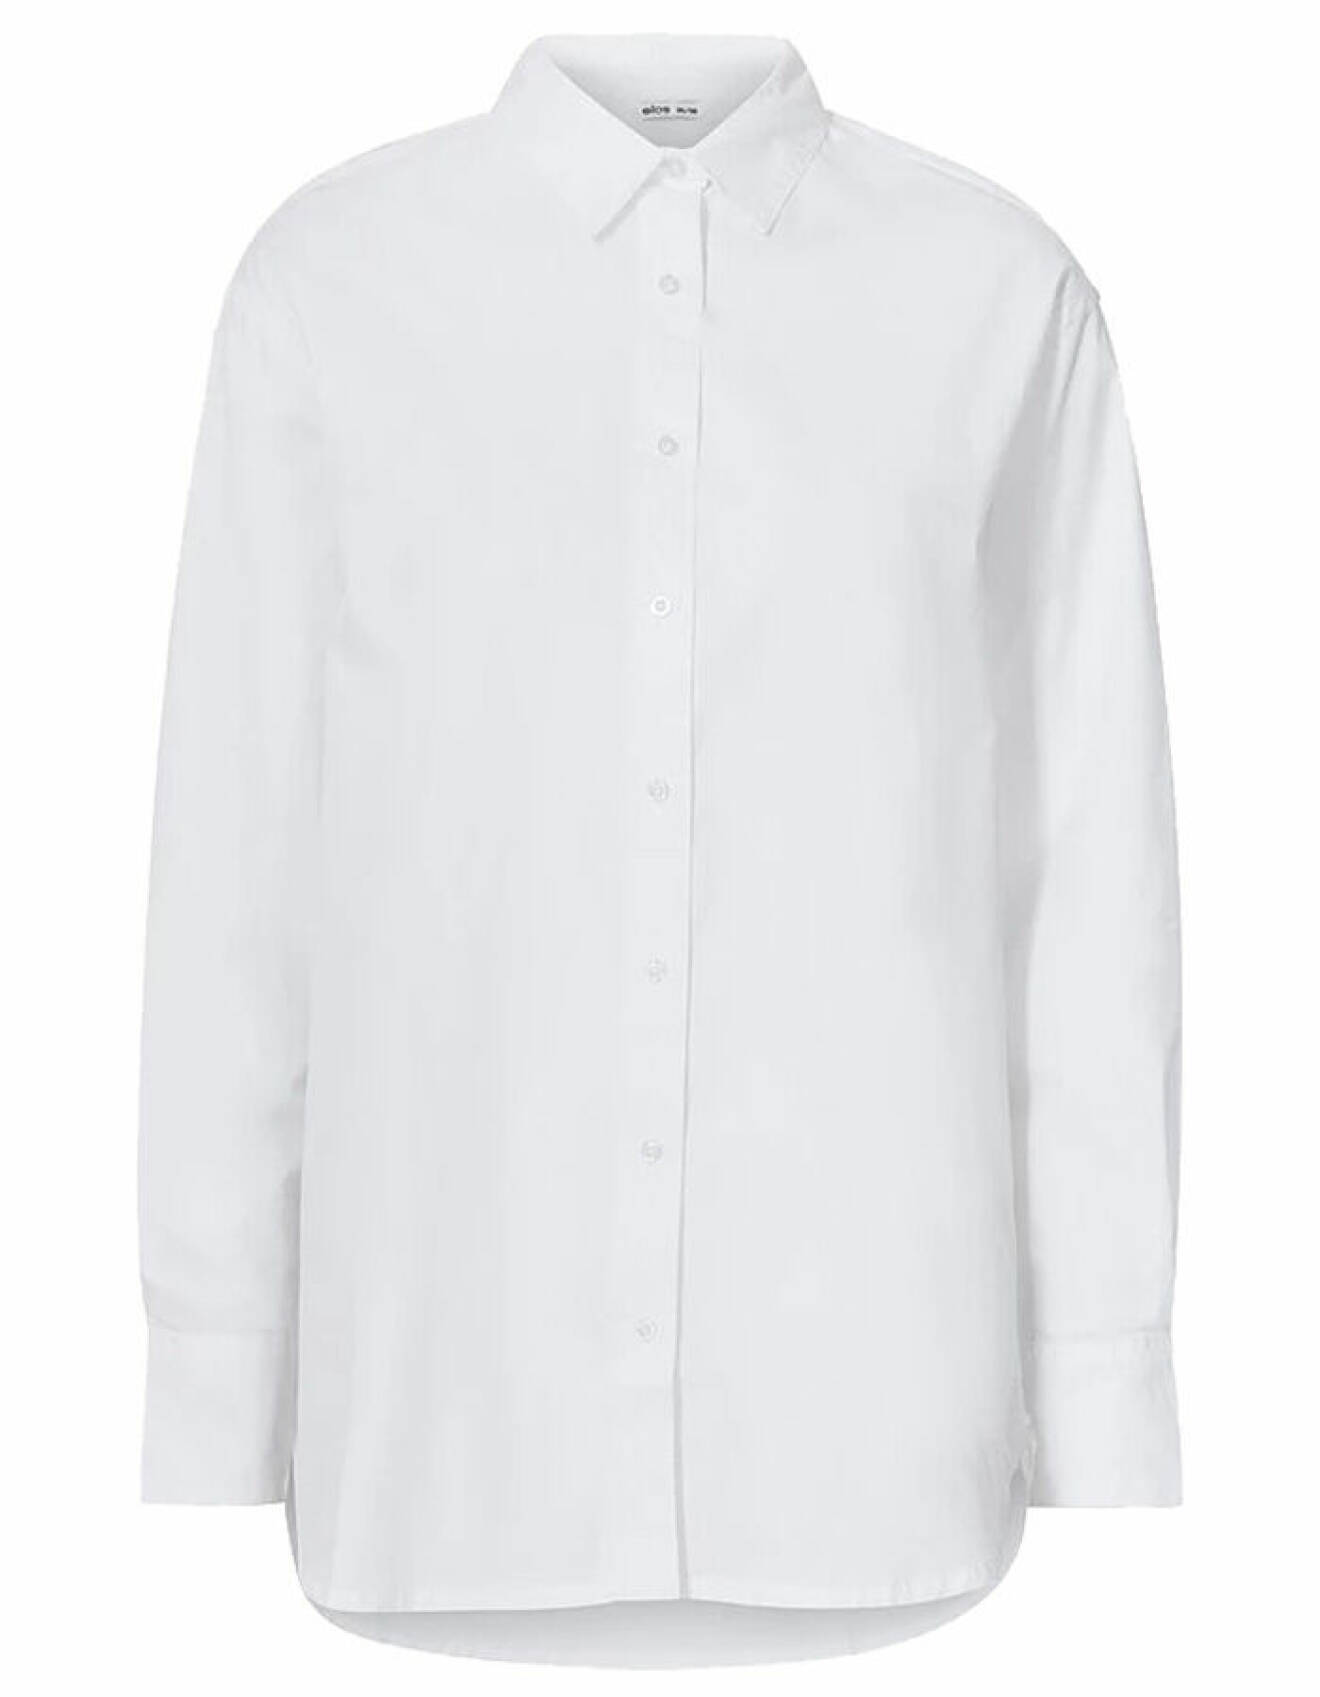 vit rak skjorta med krage för dam från ellos